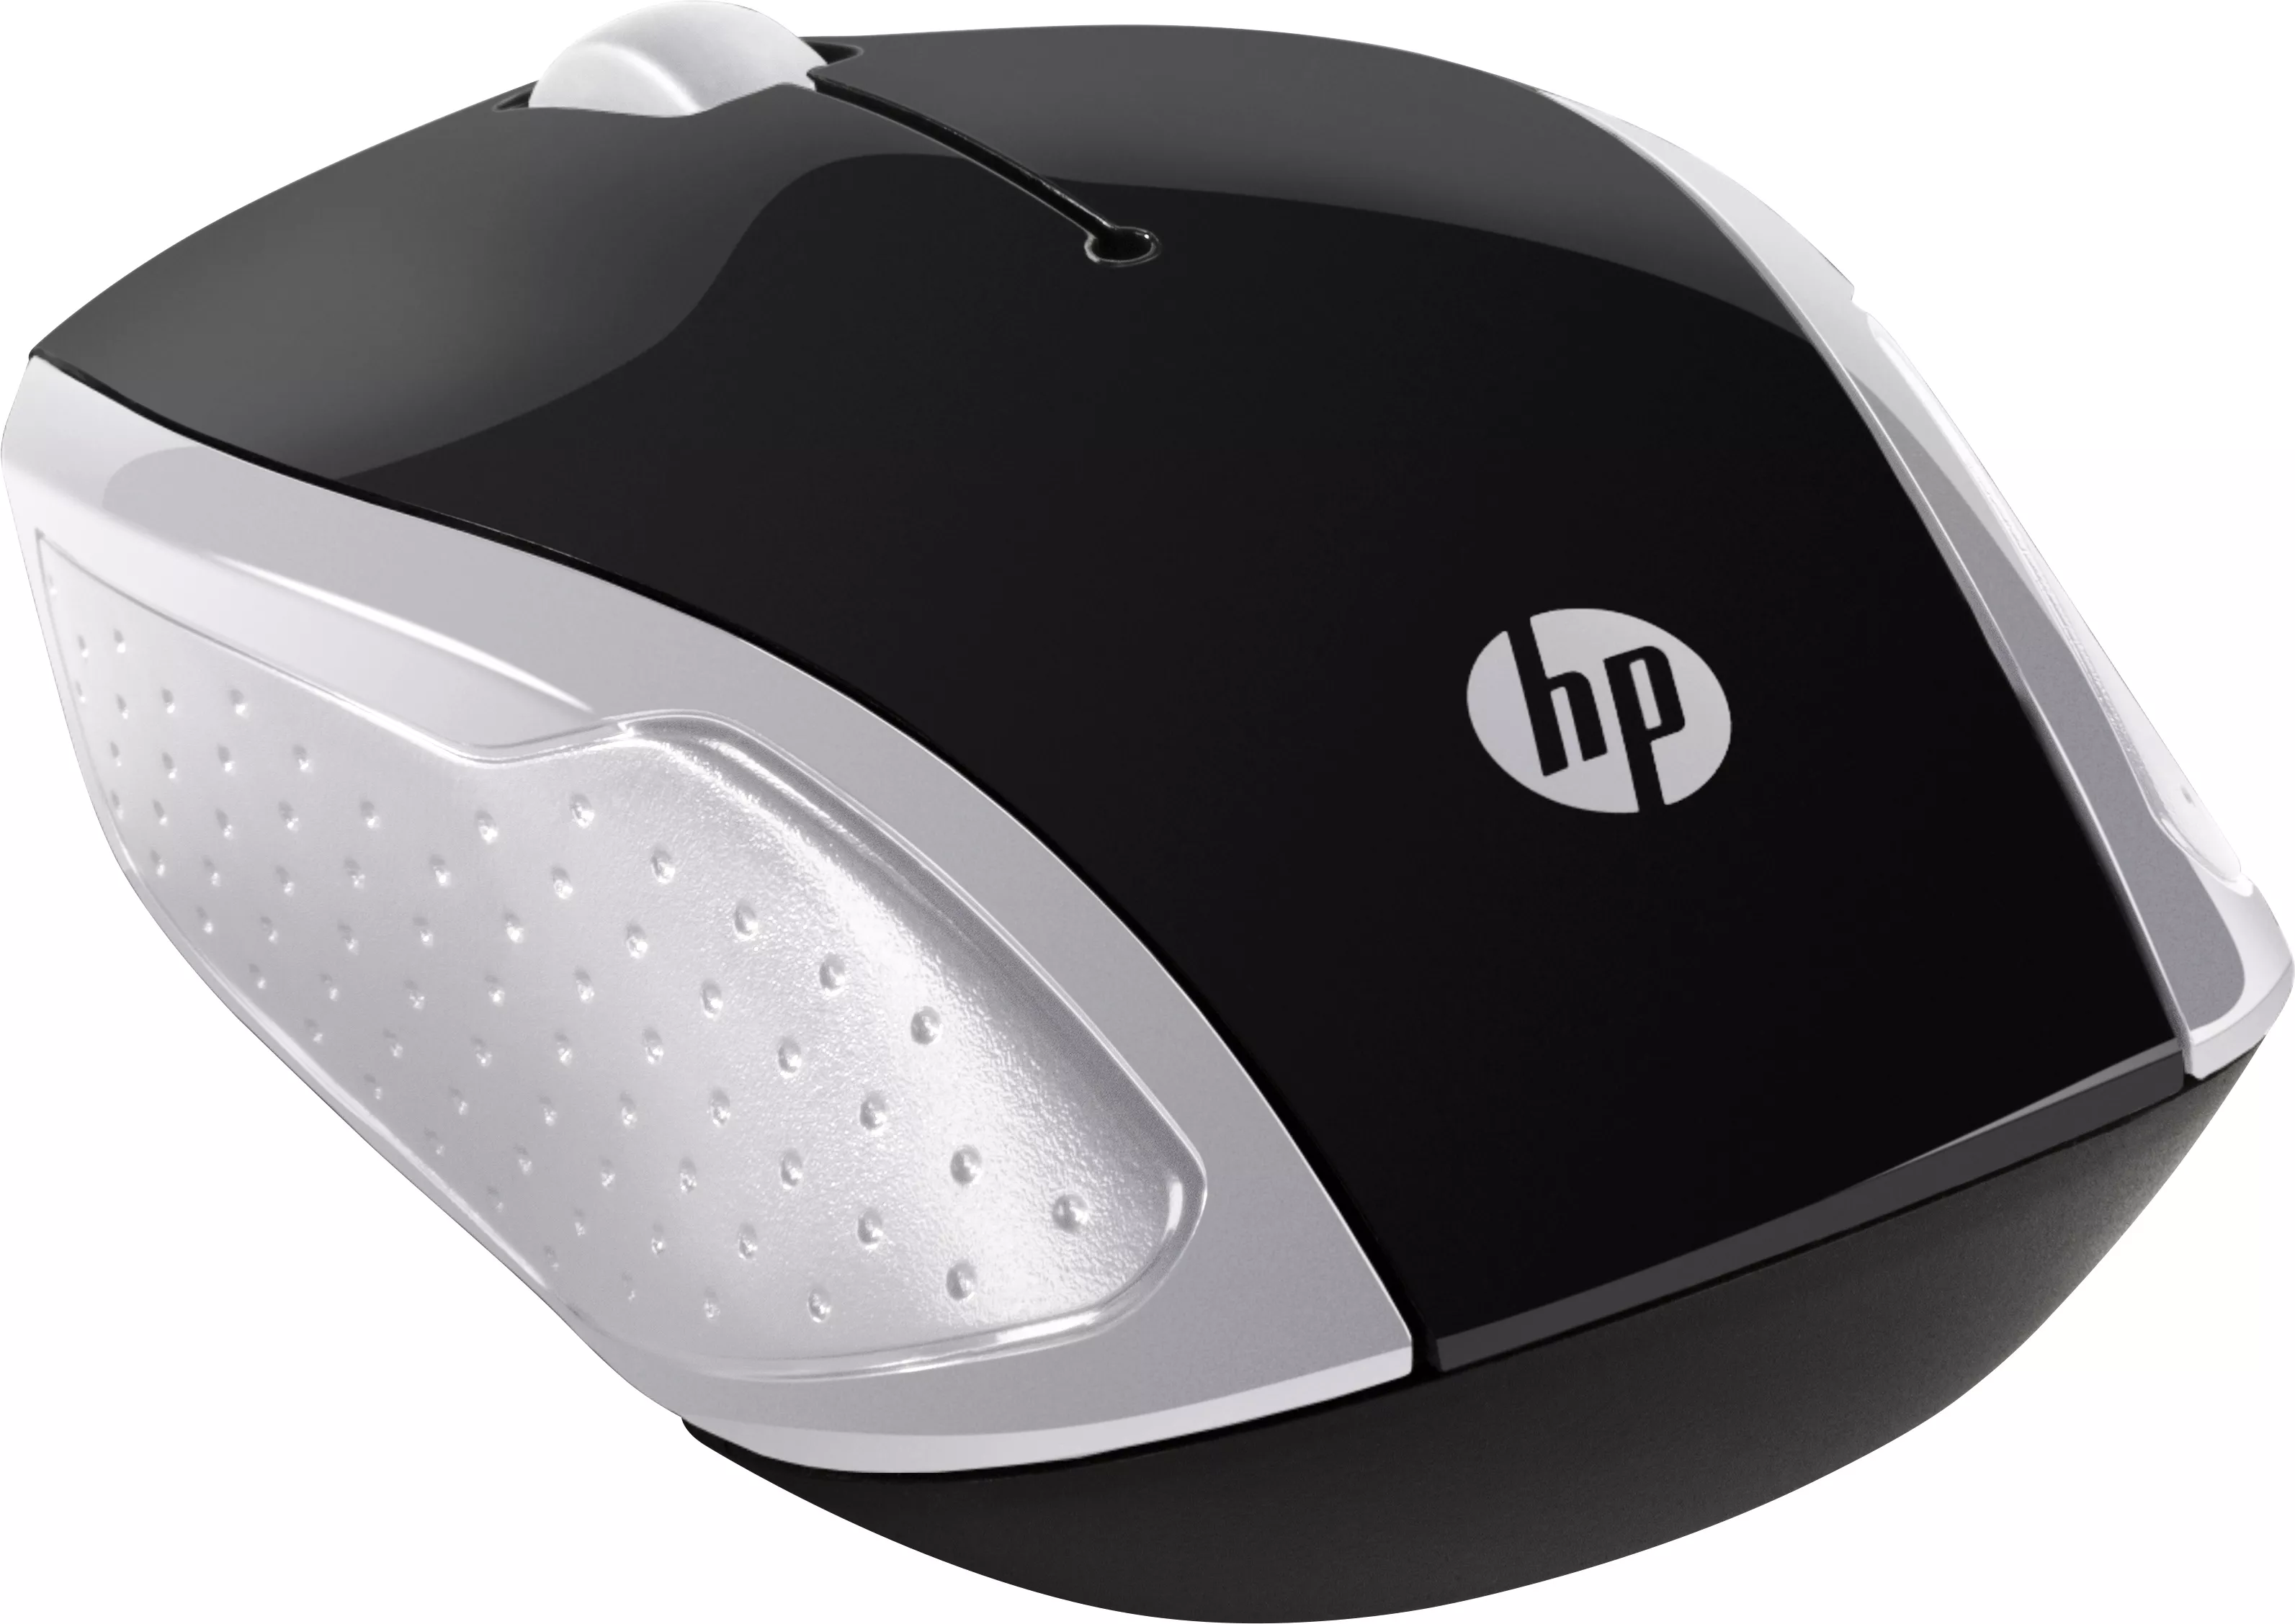 Vente HP Wireless Mouse 200 Pike Silver HP au meilleur prix - visuel 2